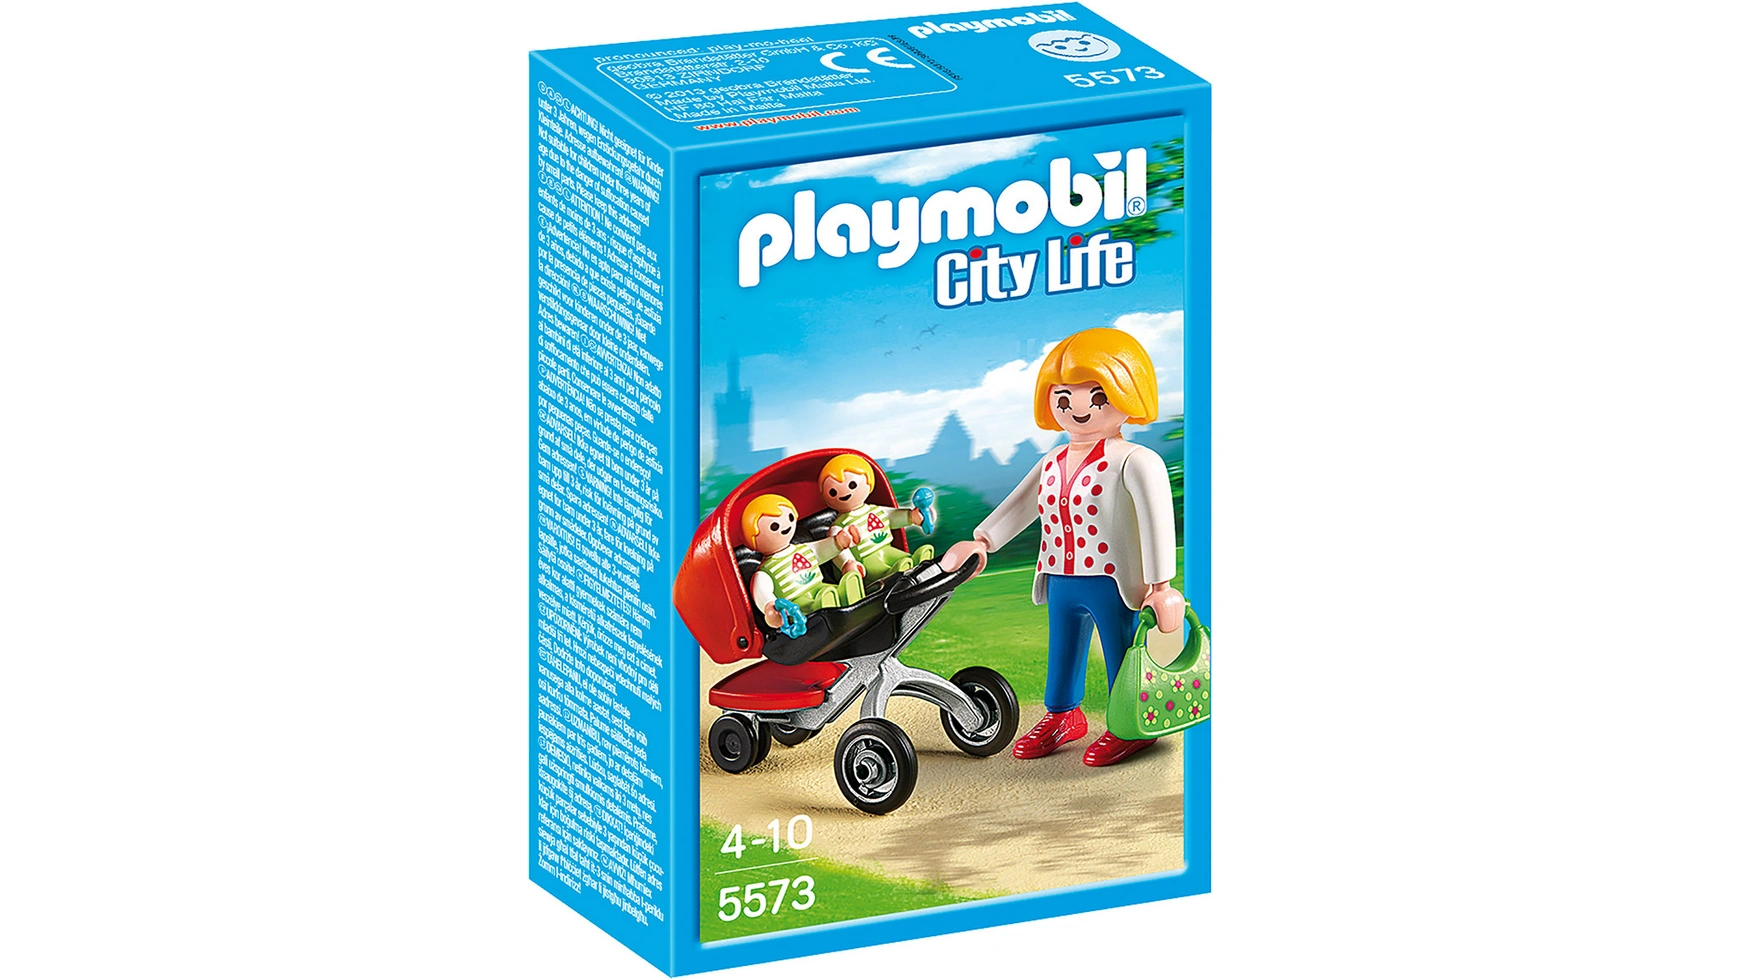 City life в детском саду: коляска для близнецов Playmobil